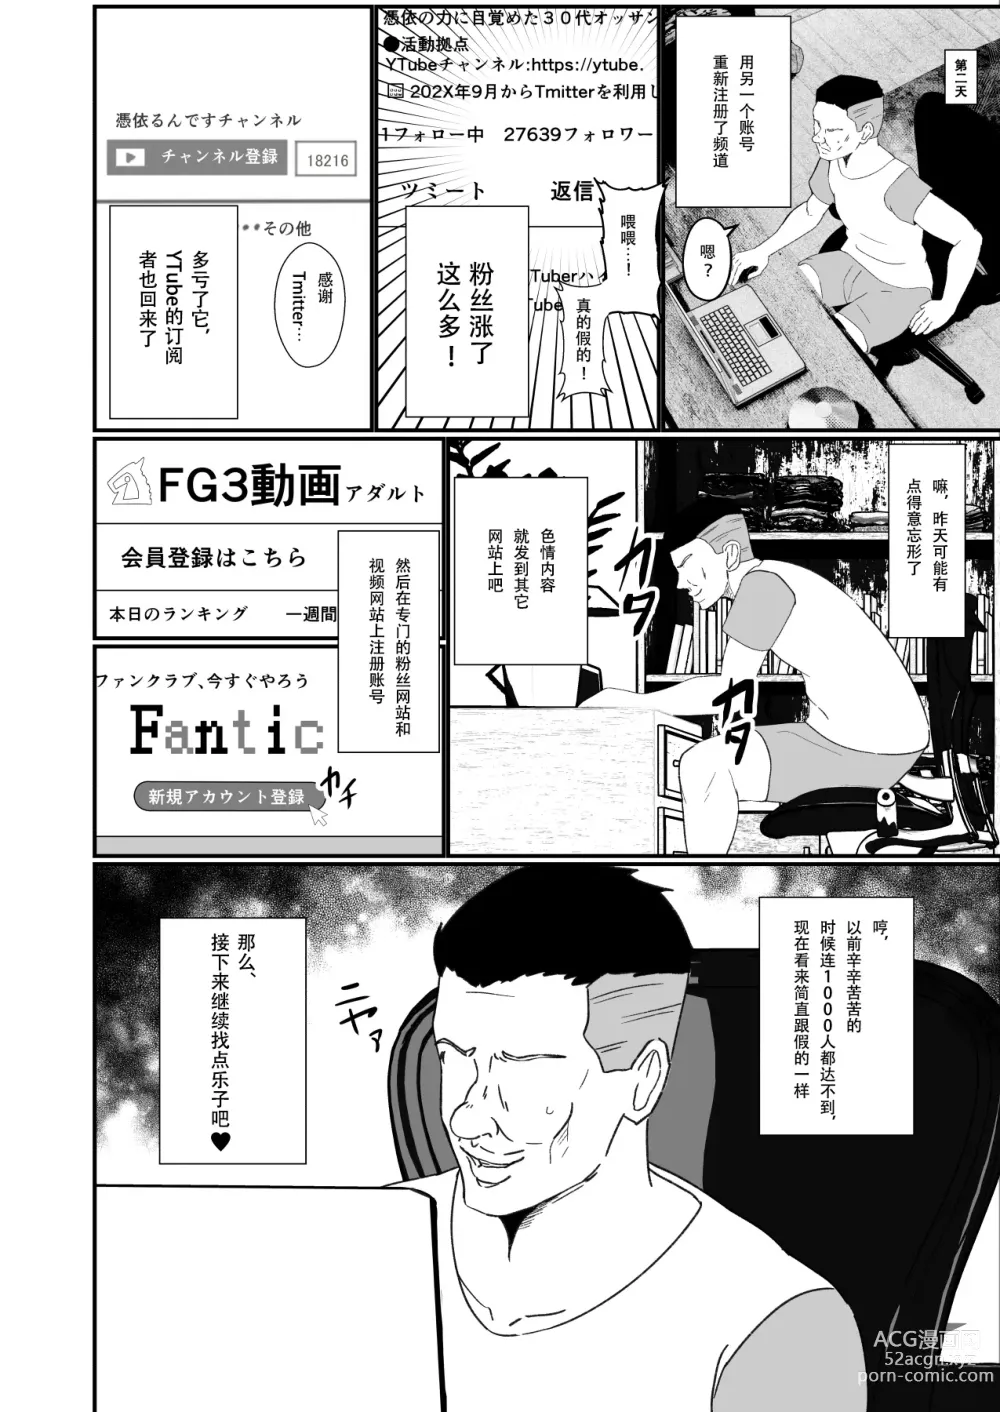 Page 26 of doujinshi Hyoui-kei YTuber ~Ubatta Karada de Haishin Katsudou~